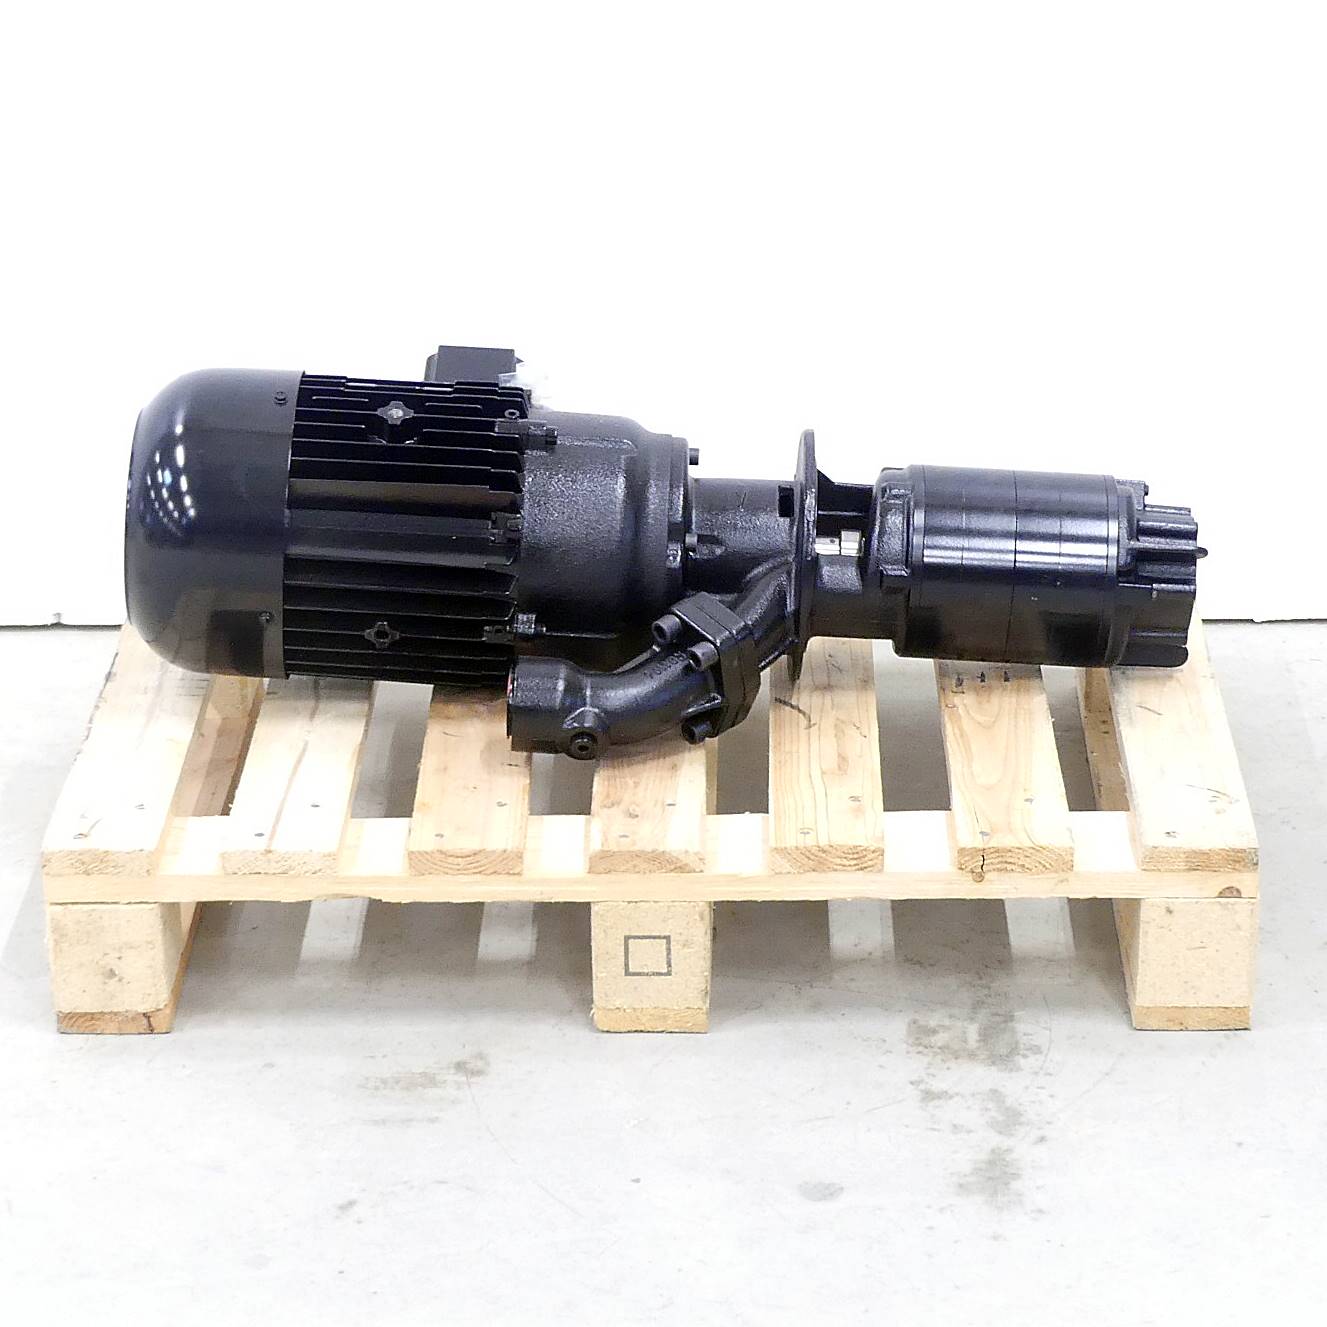 Slurp submersible pump SGL503/280-MV+211 